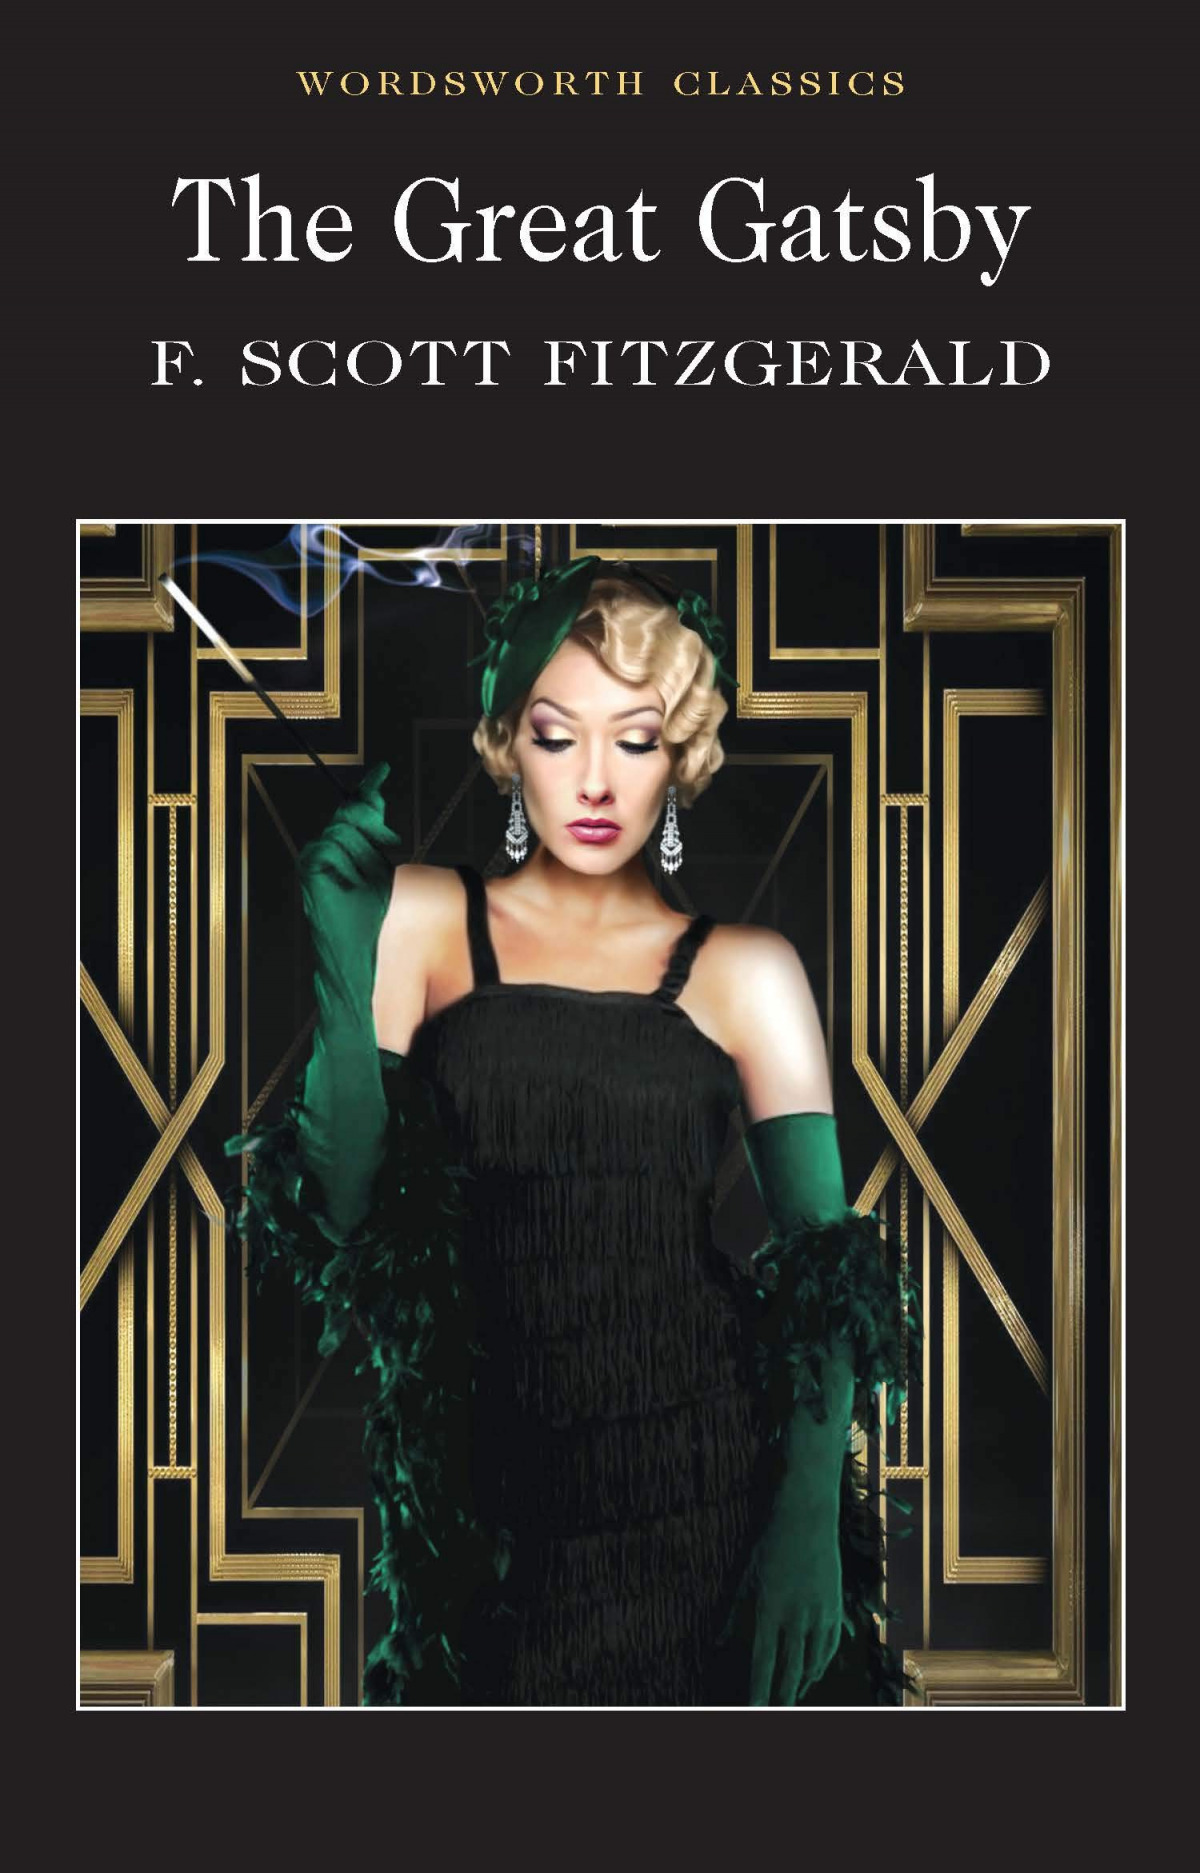 The great gatsby - Fitzgerald, F.Scott